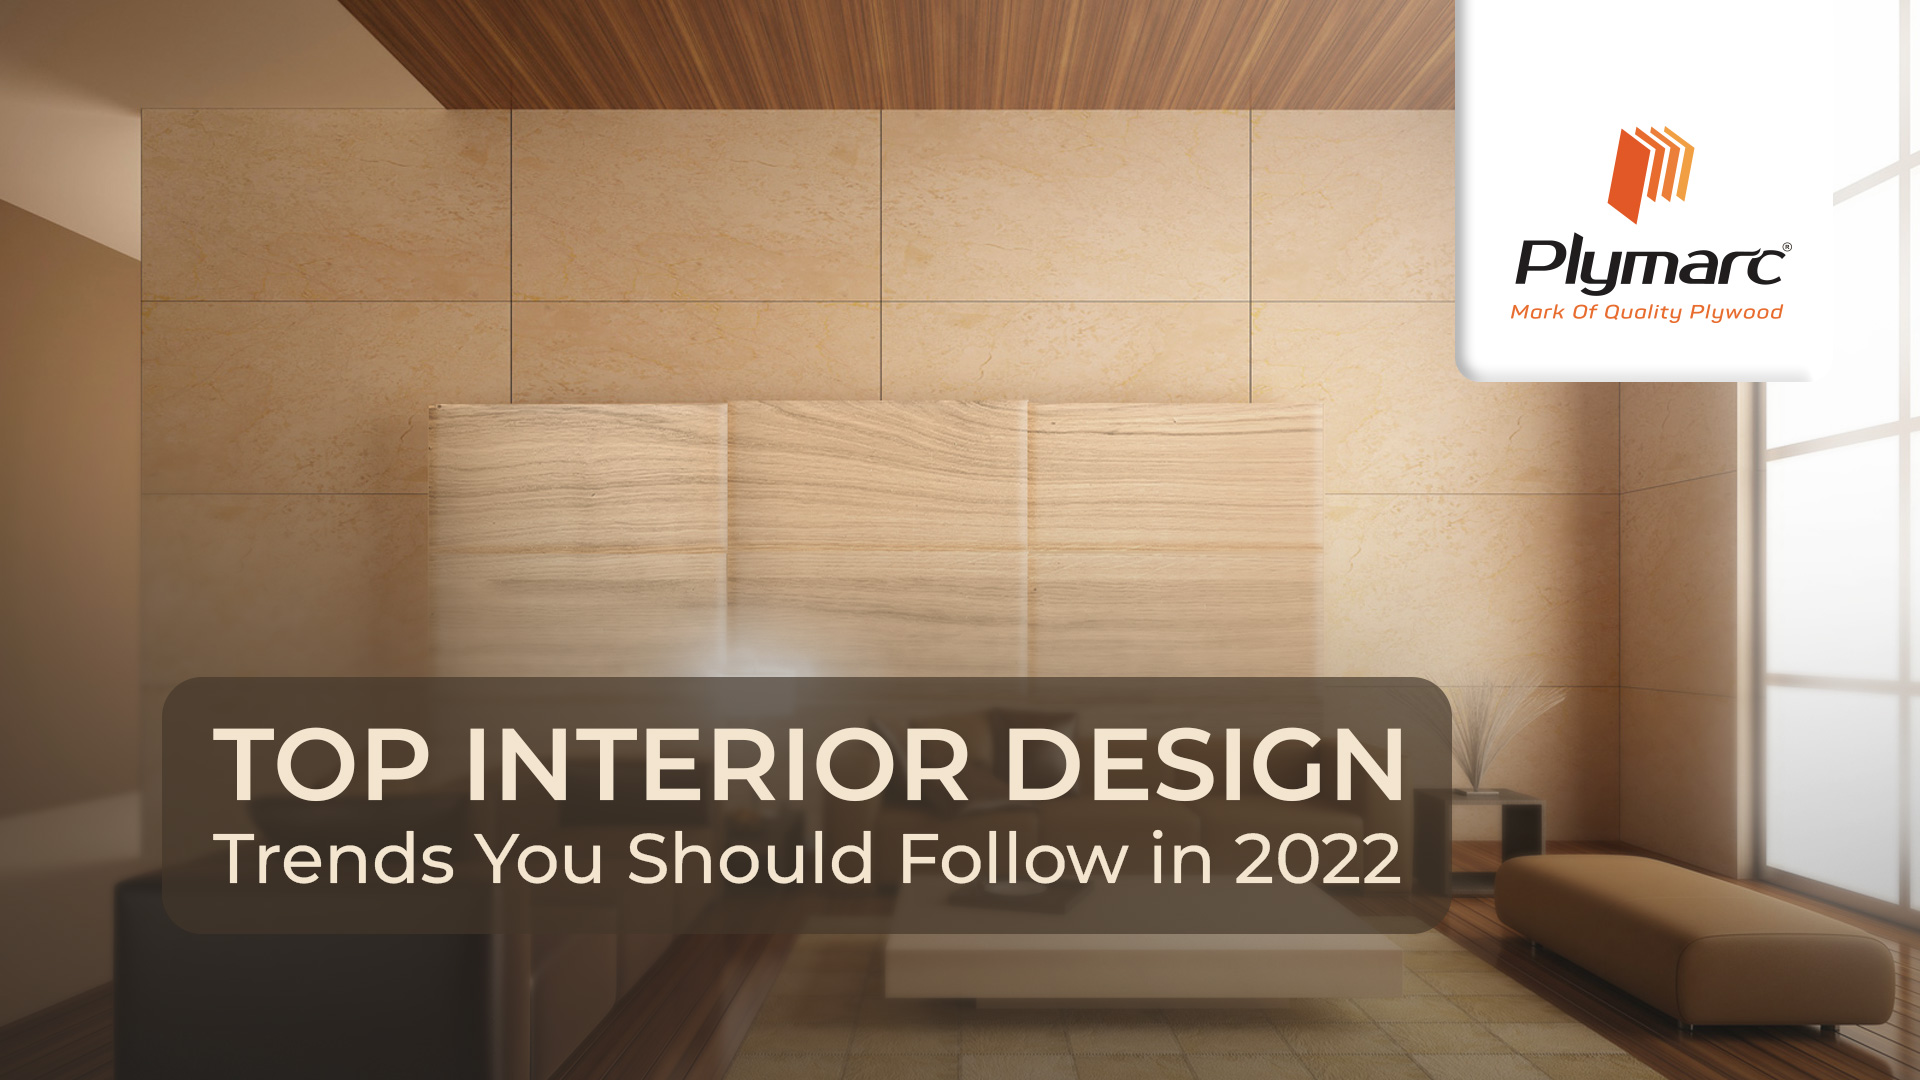 plymarc Top Interior Design Trends You Should Follow in 2022 - plymarc